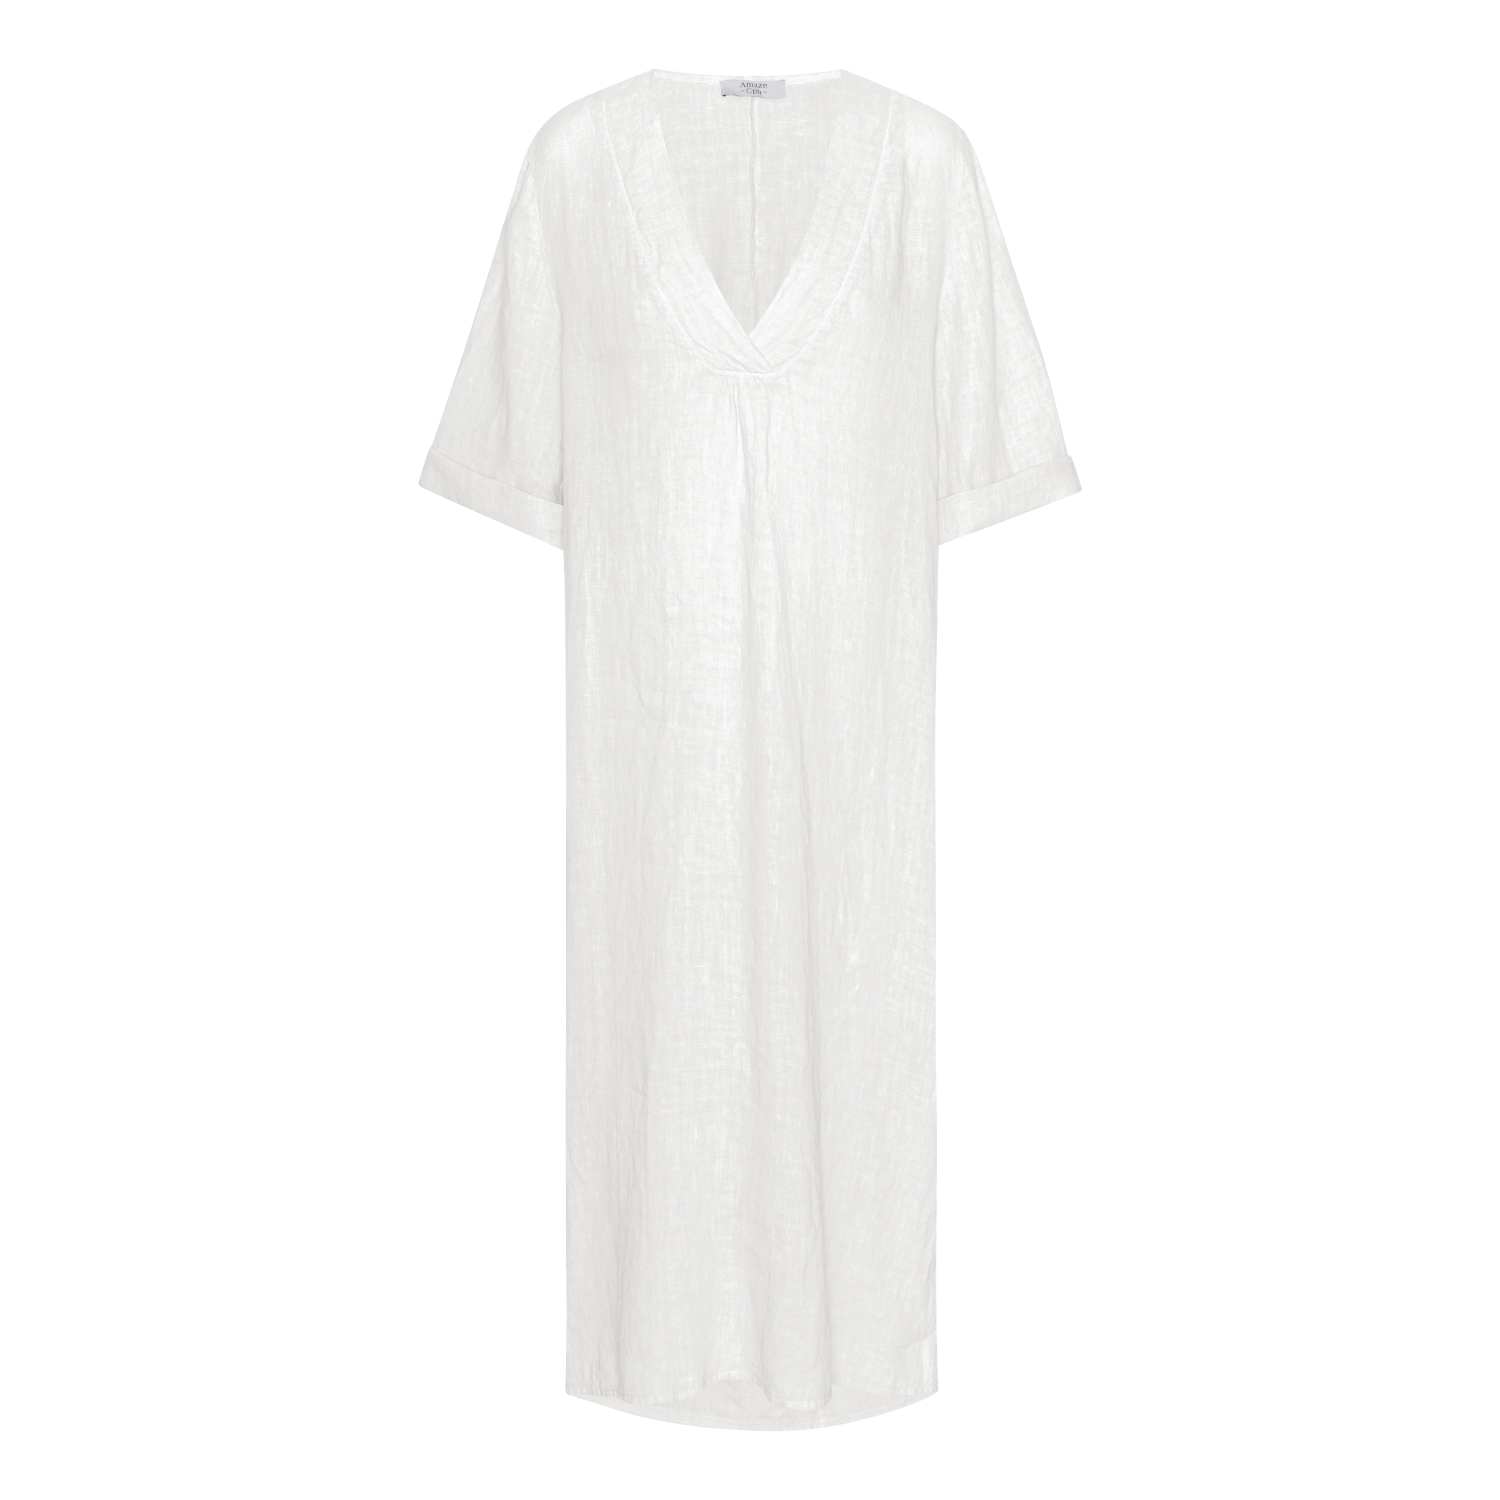 Linen Dress - White - Amaze Cph - White - S/M